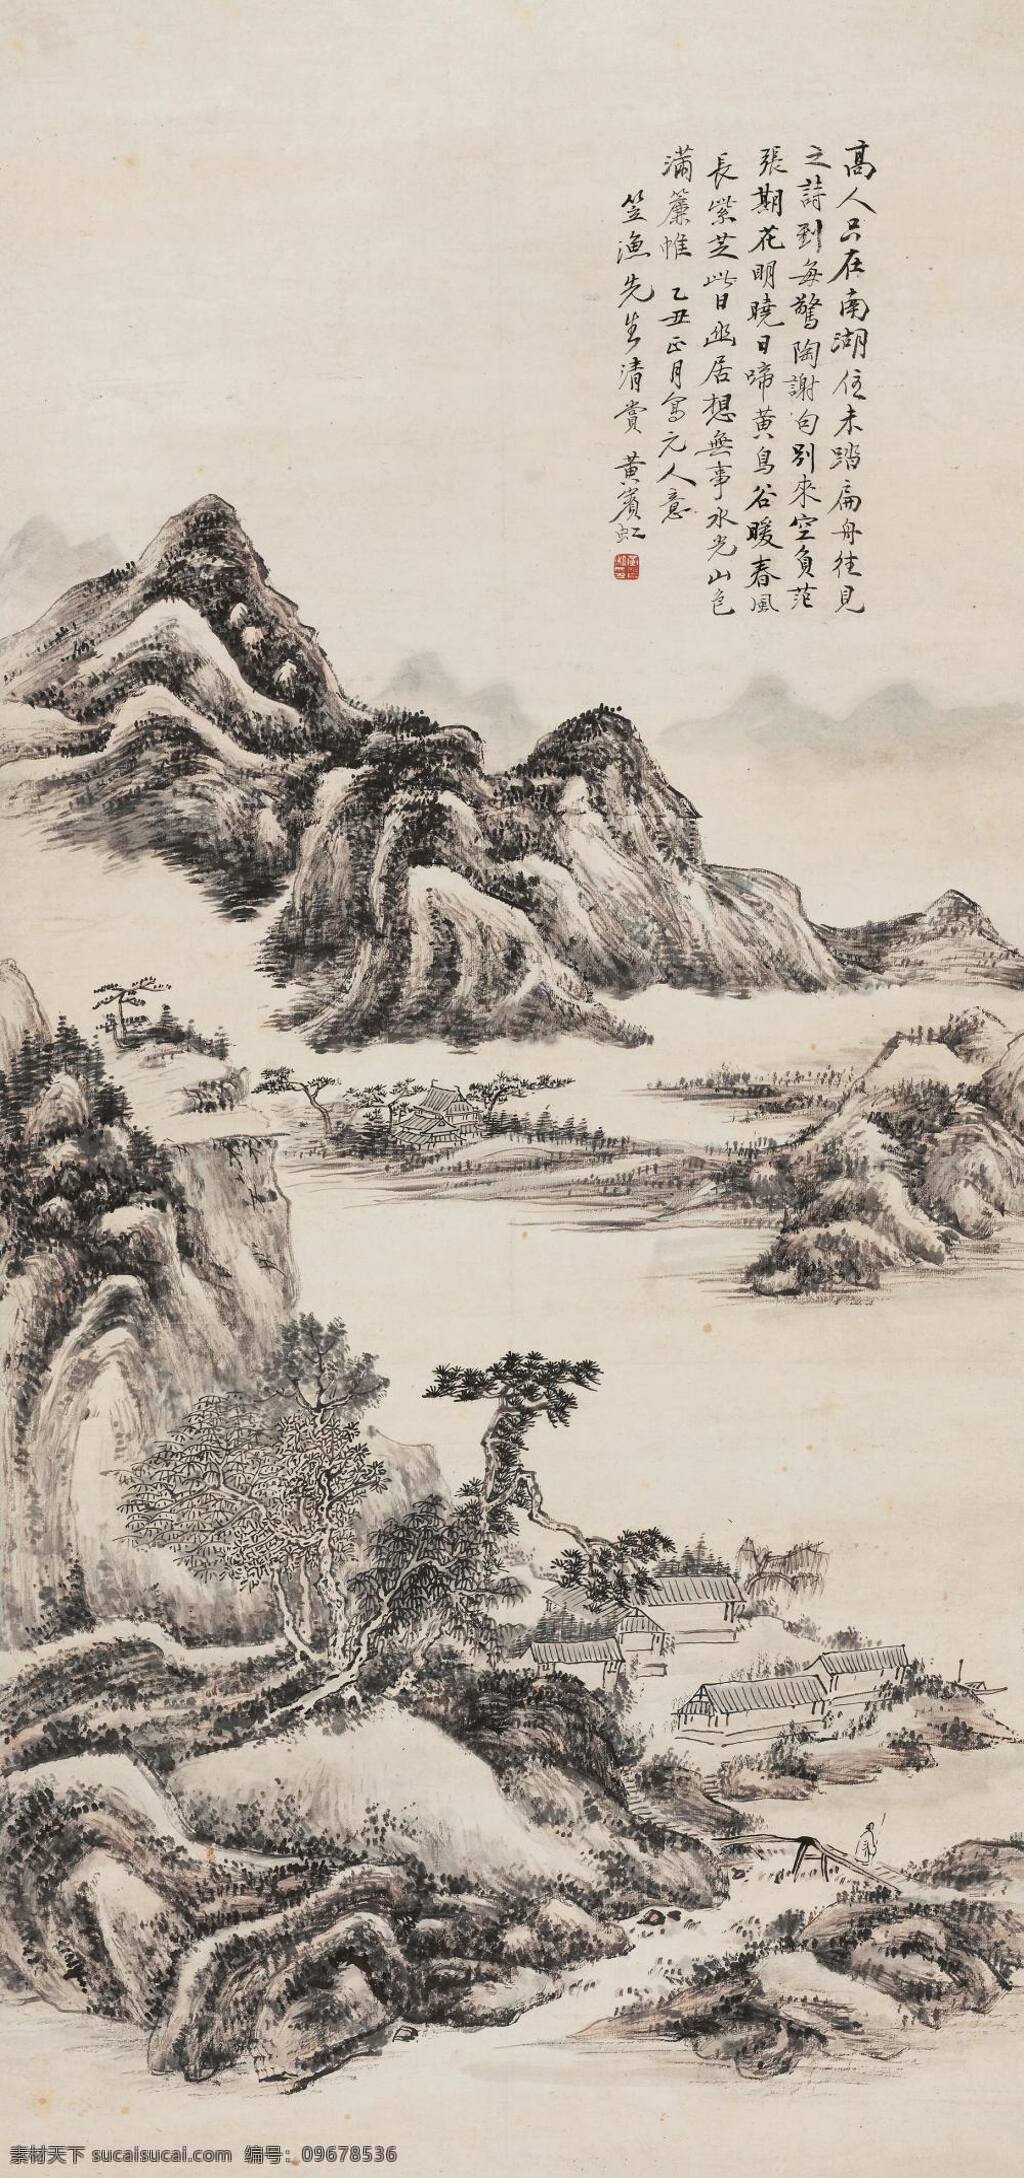 黄宾虹 元人诗意图 文化艺术 国画 山水 绘画书法